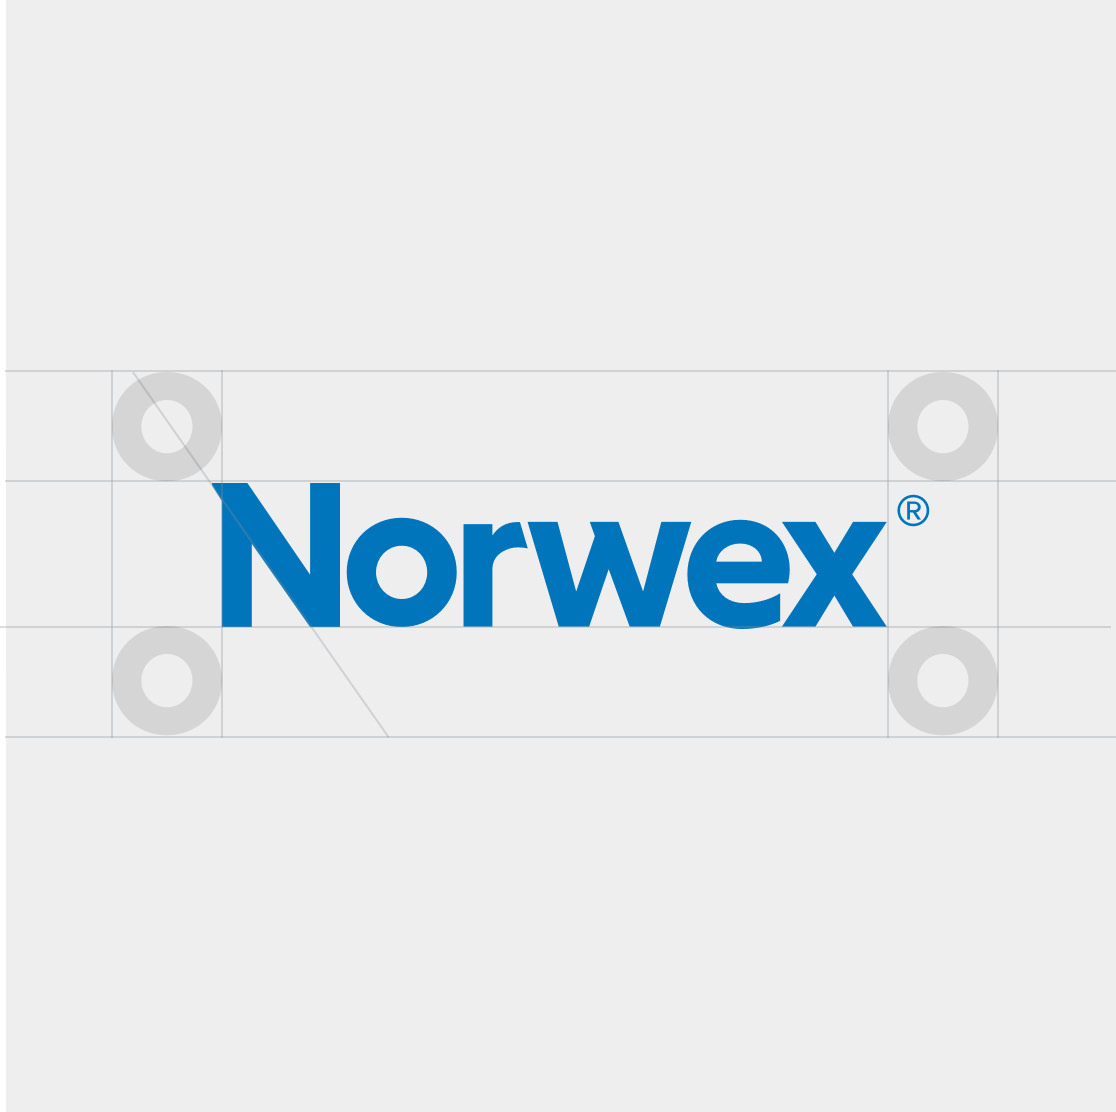 Norwex Brand & Digital Strategy, Work